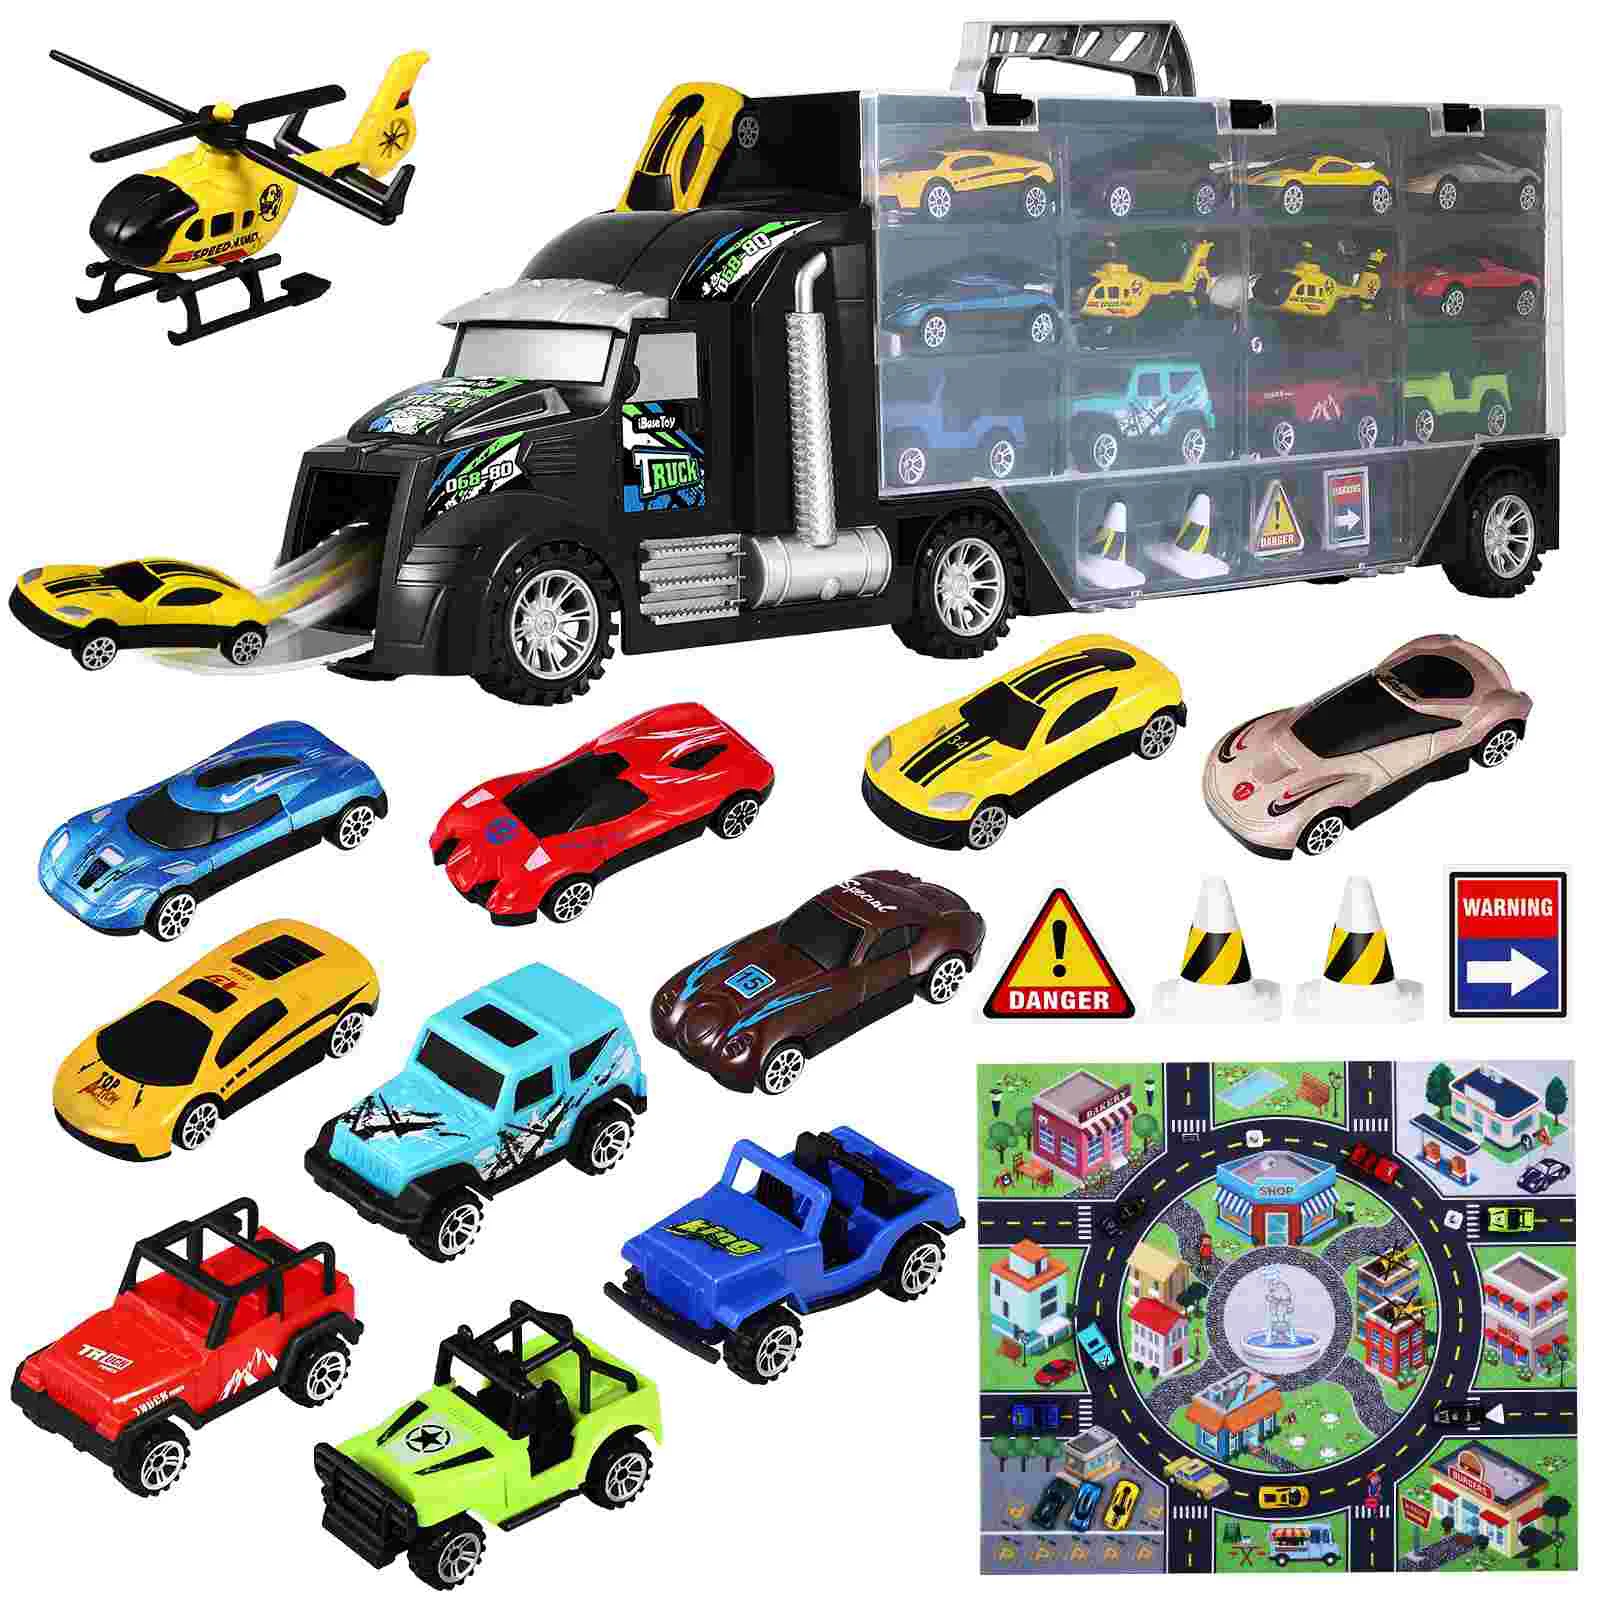 

IBaseToy искусственный грузовик игрушечный набор небольшие транспортные средства вертолеты грузовик детская модель автомобиля Комплект для подарка искусственные подарки